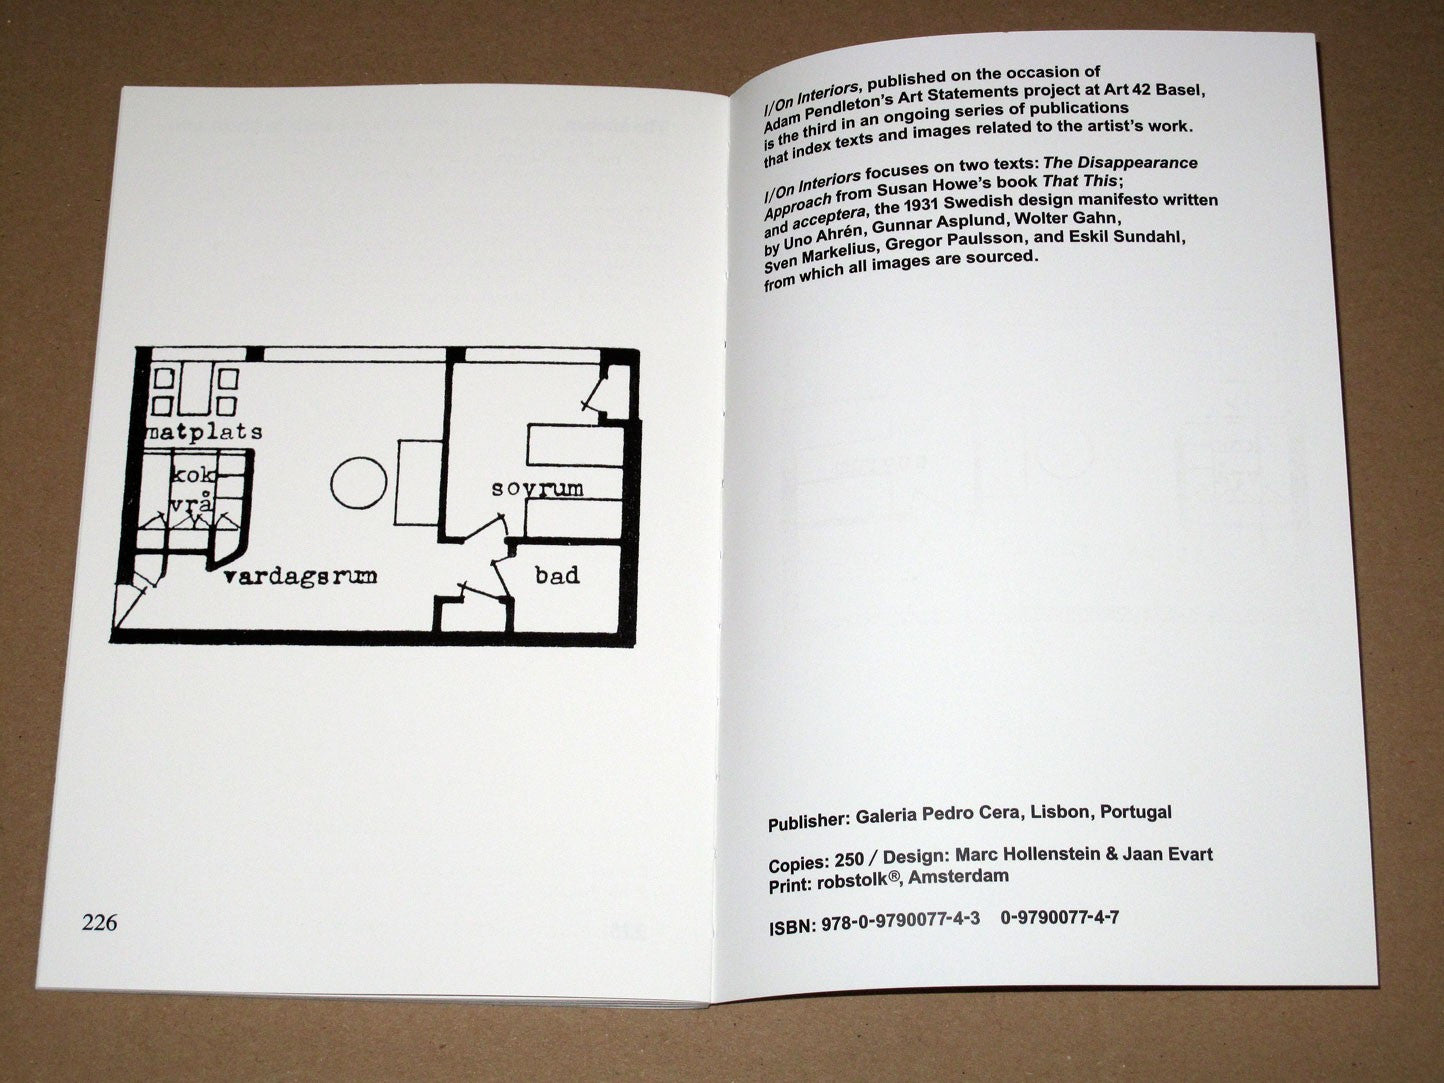 Terrazzo Band 1 (Architektur und Design/Herbst 1988, Nr. 1) Taschenbuch – 15. Oktober 1988 